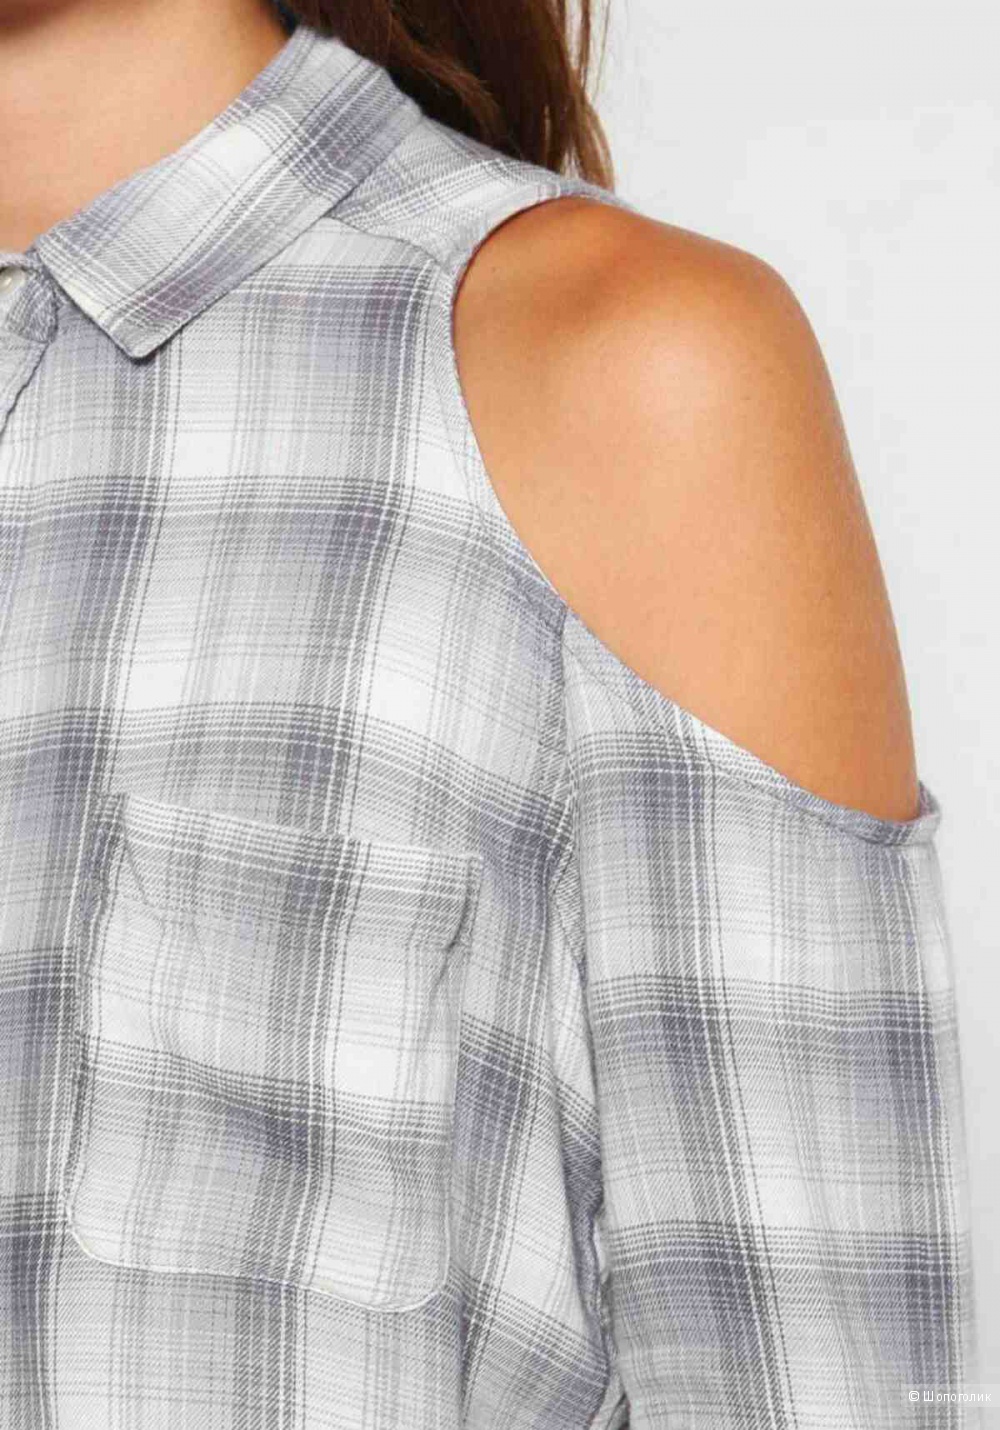 Серая женская рубашка Hollister с открытыми плечами р. 46 (М)